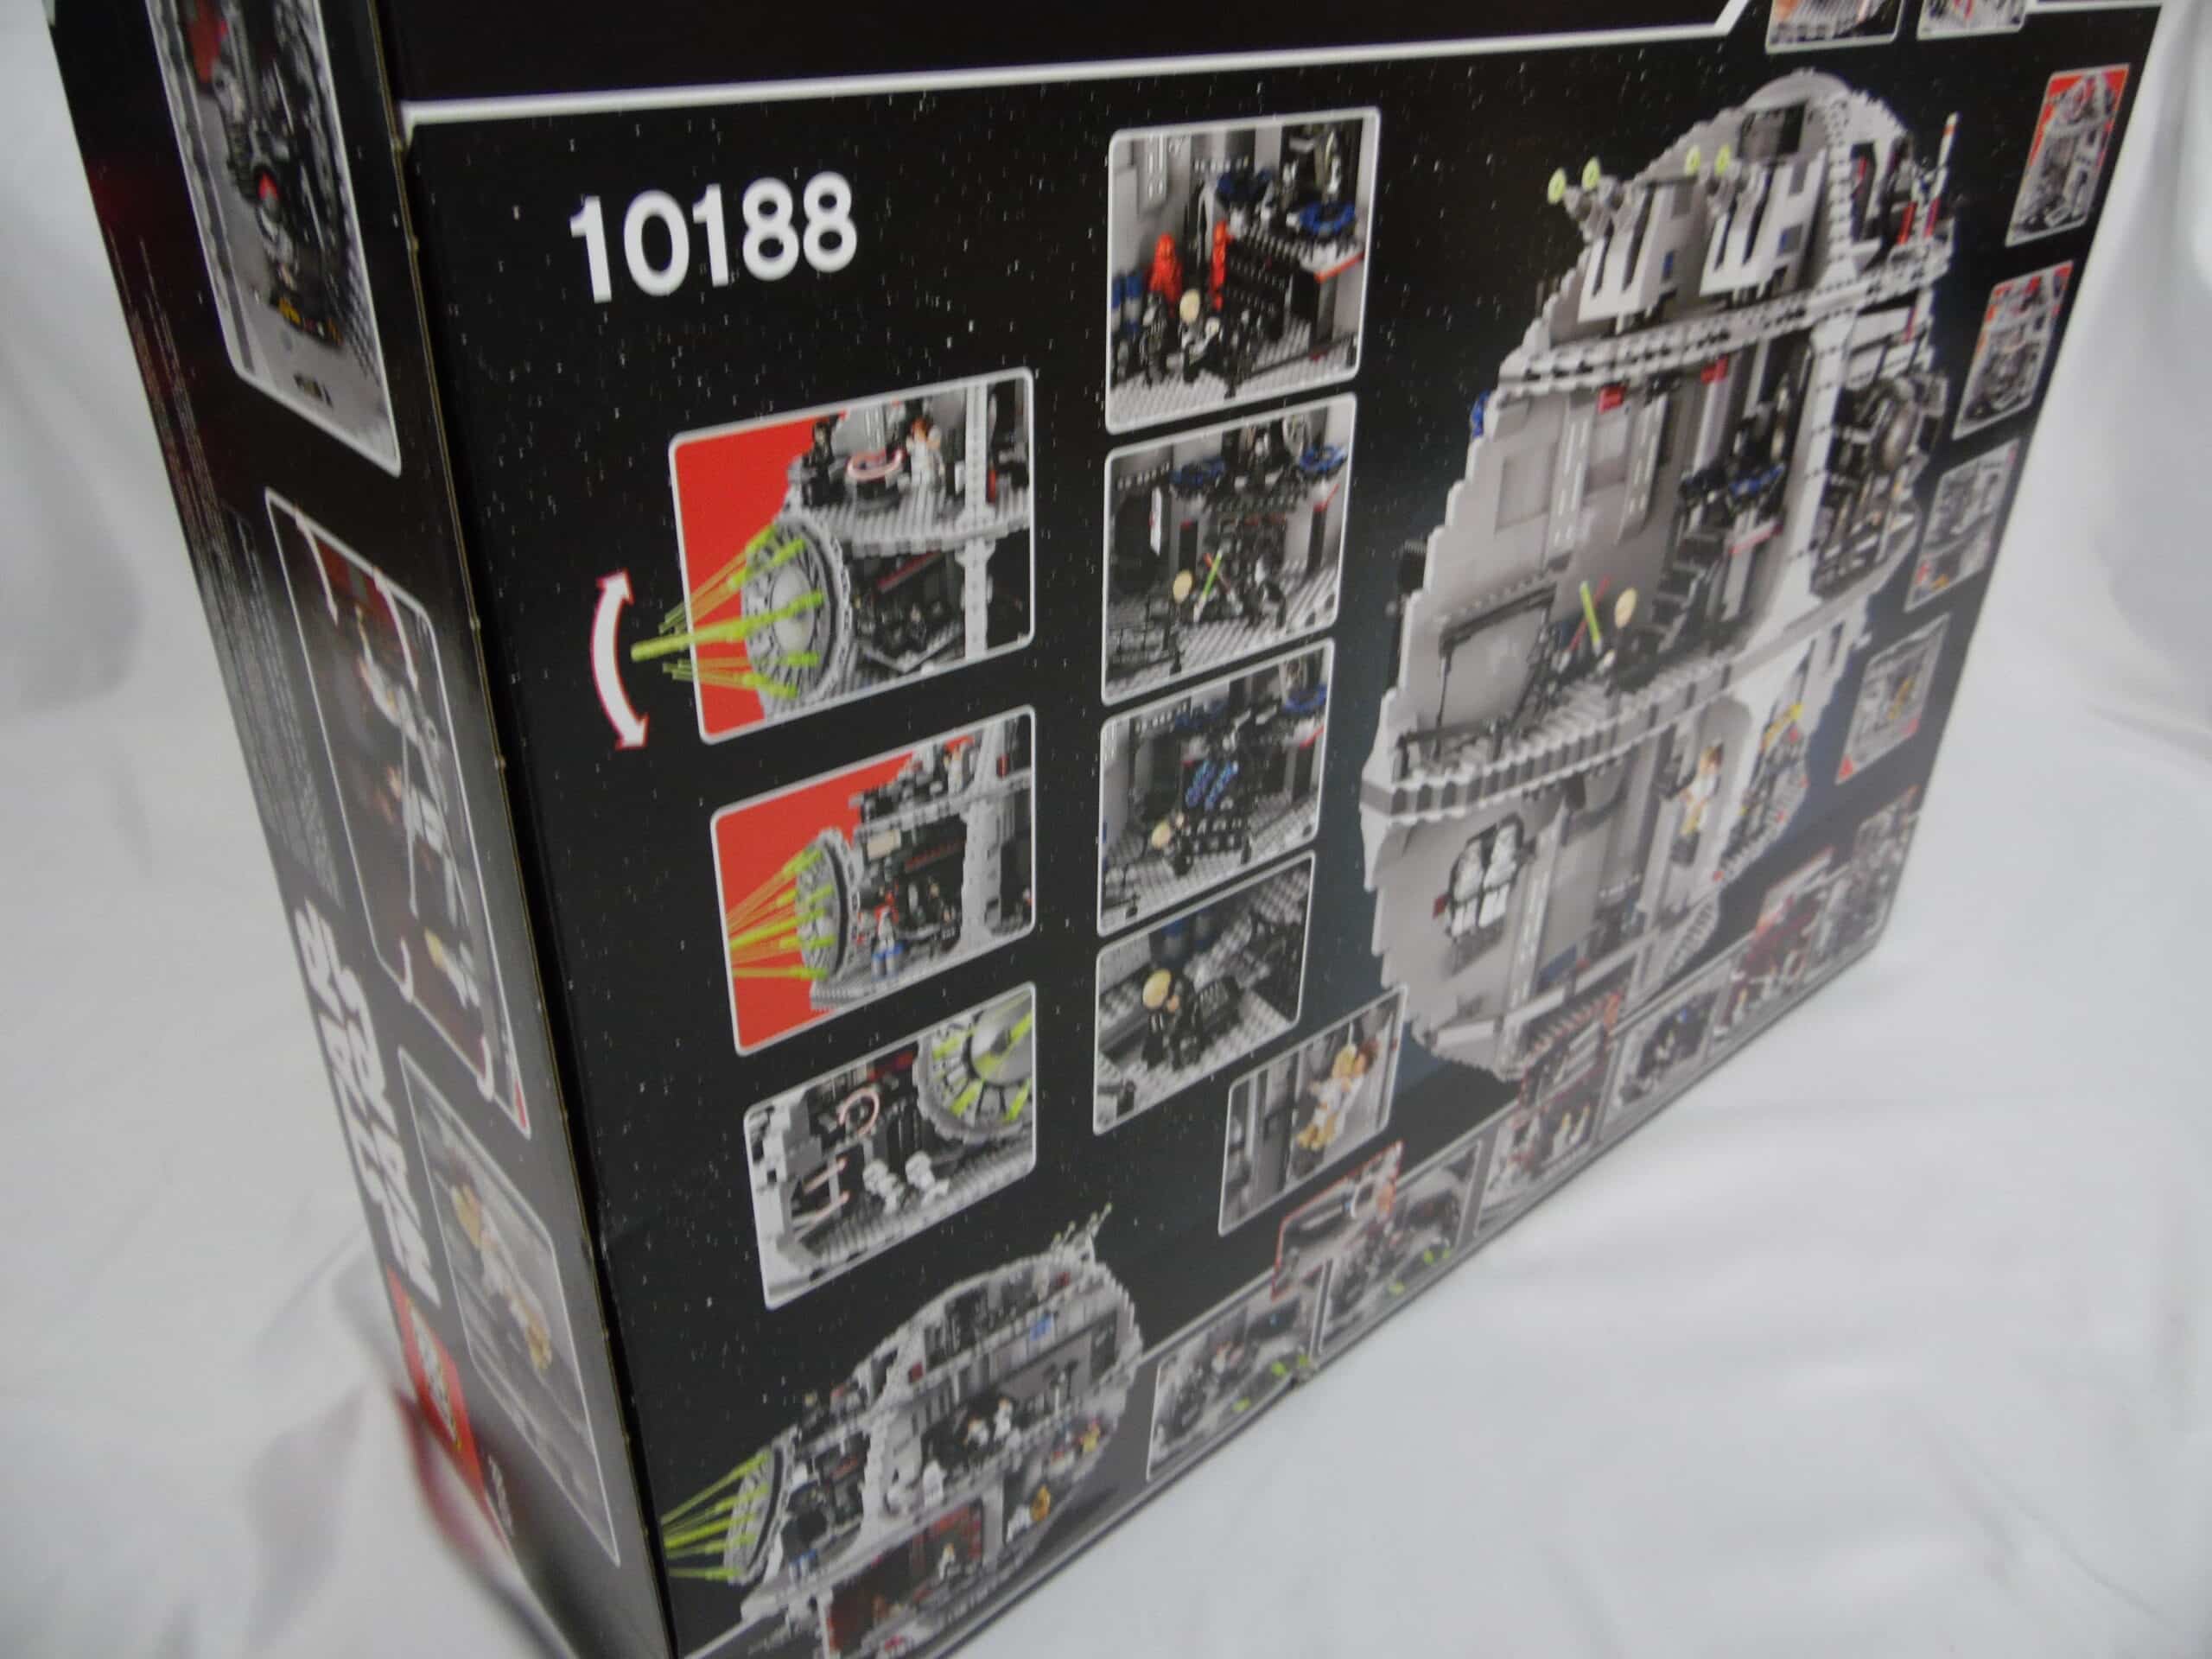 LEGO Star Wars 10188 pas cher, L'Étoile de la Mort